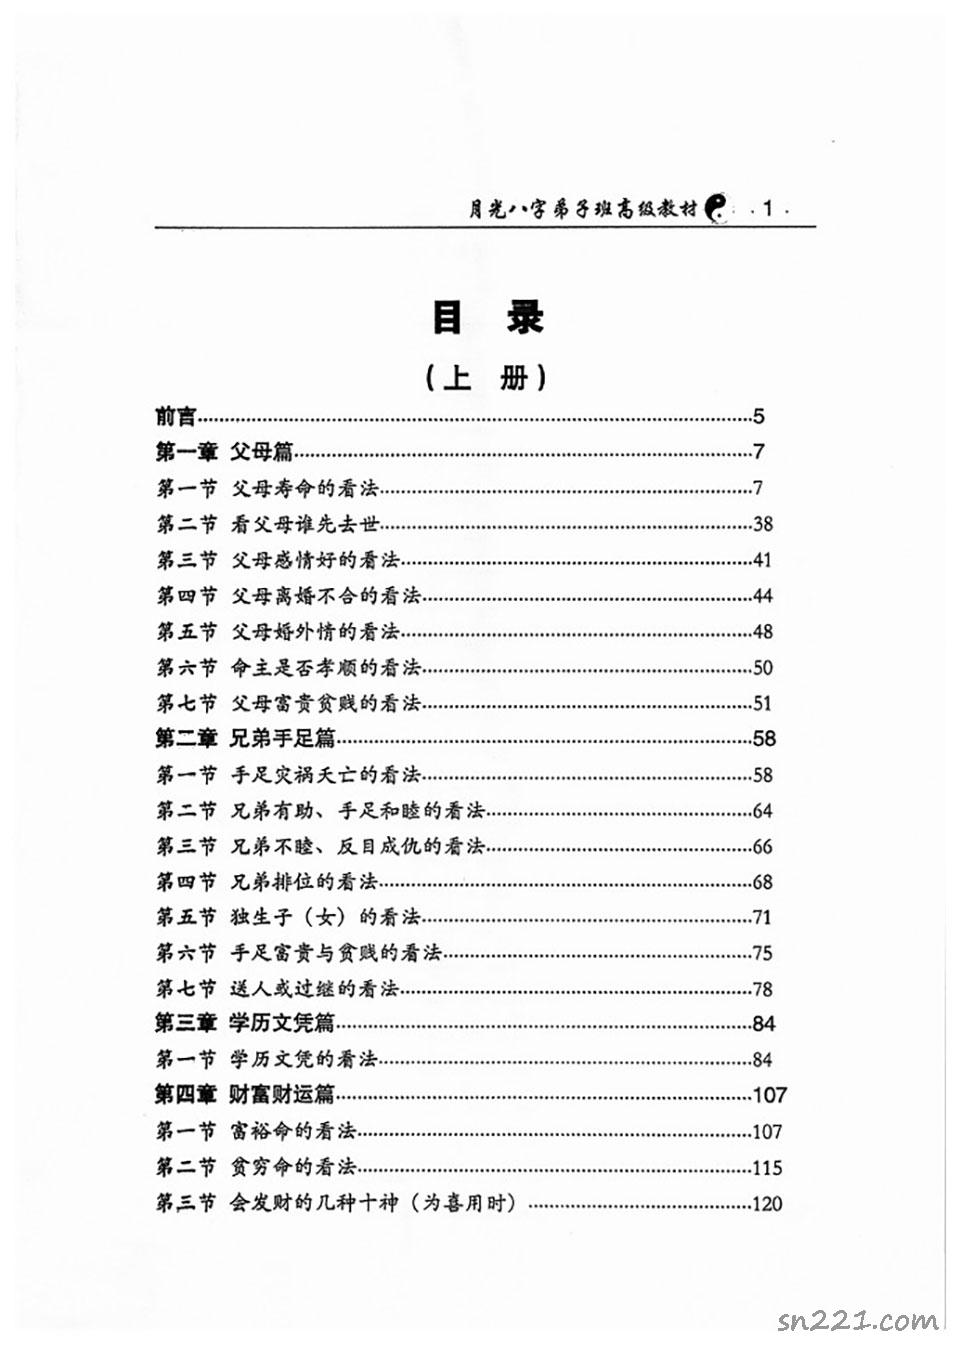 王君凌著《月光八字弟子班高級教材》上下冊PDF